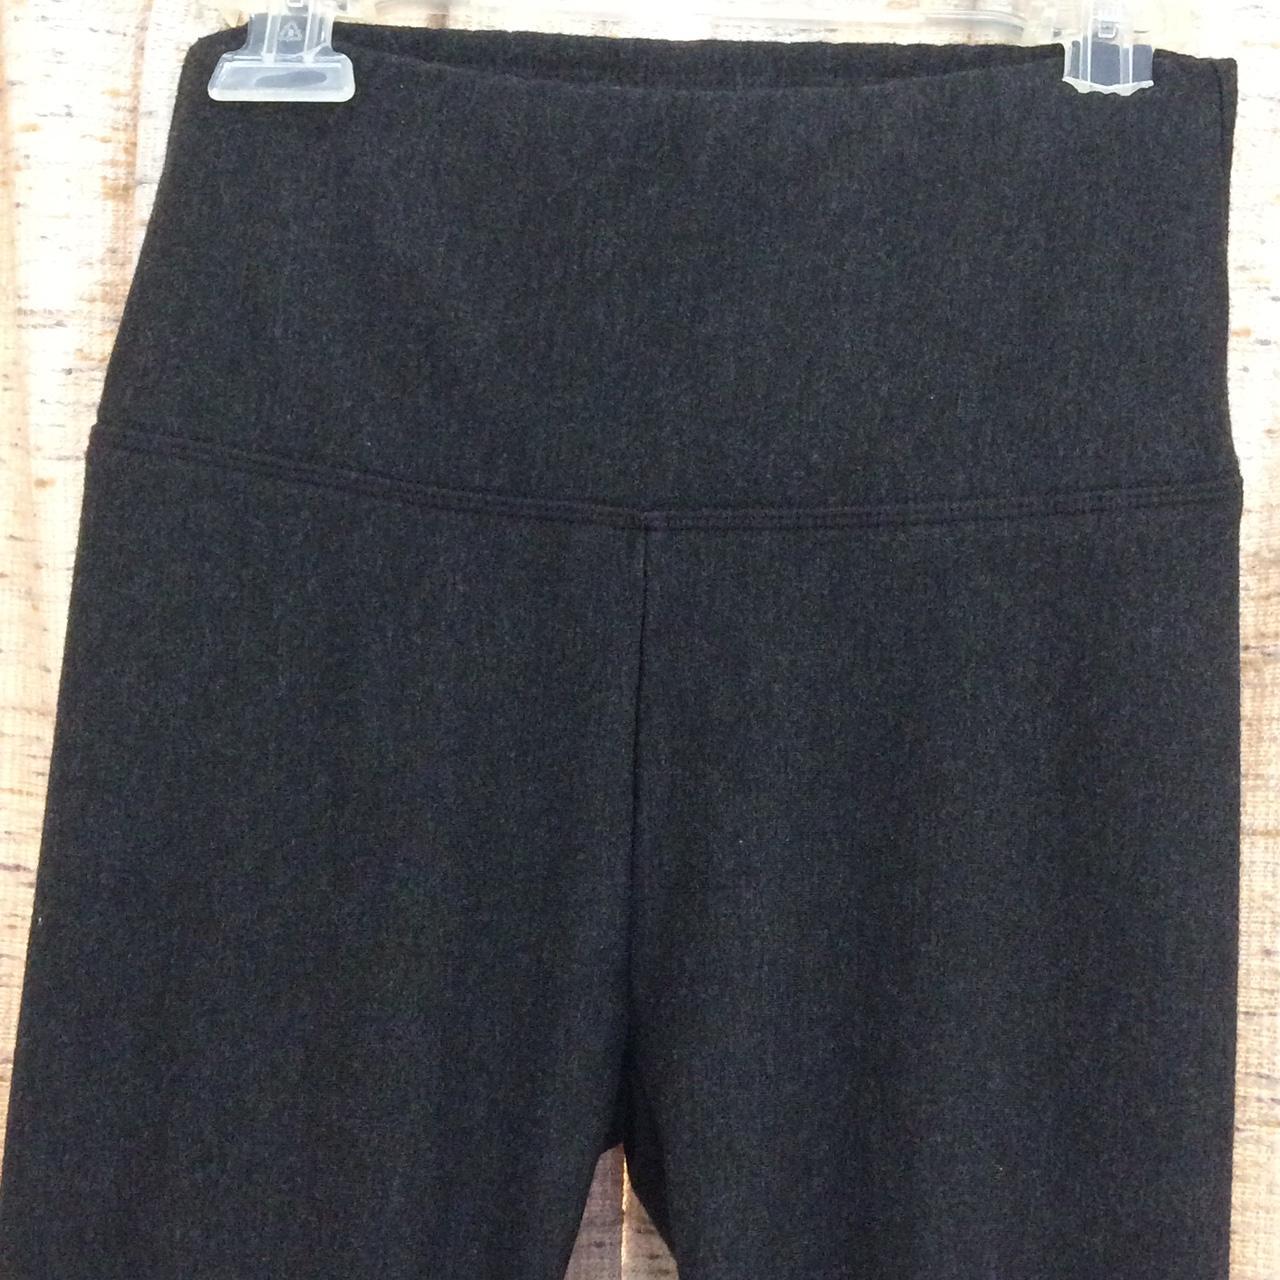 Orvis Women's High-rise Soft Fleece Lined Active Pants Full Length Leggings  